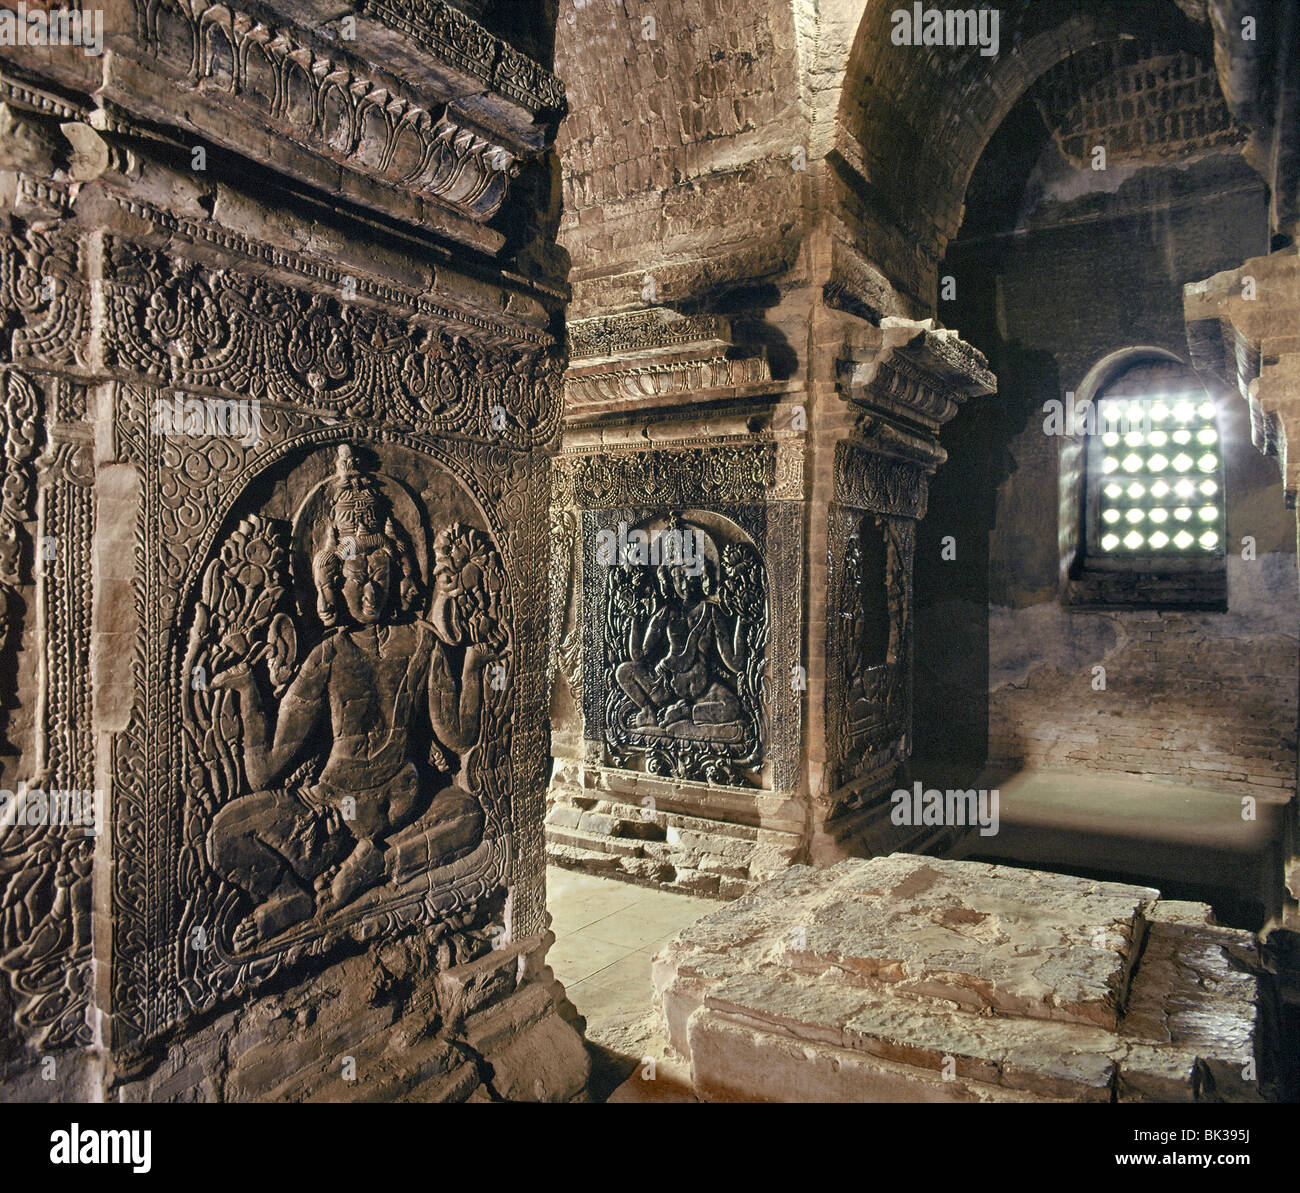 Le sanctuaire intérieur de temple Nanpaya, avec images brahmanique sculptés sur les piliers, Bagan (Pagan), le Myanmar (Birmanie), l'Asie Banque D'Images